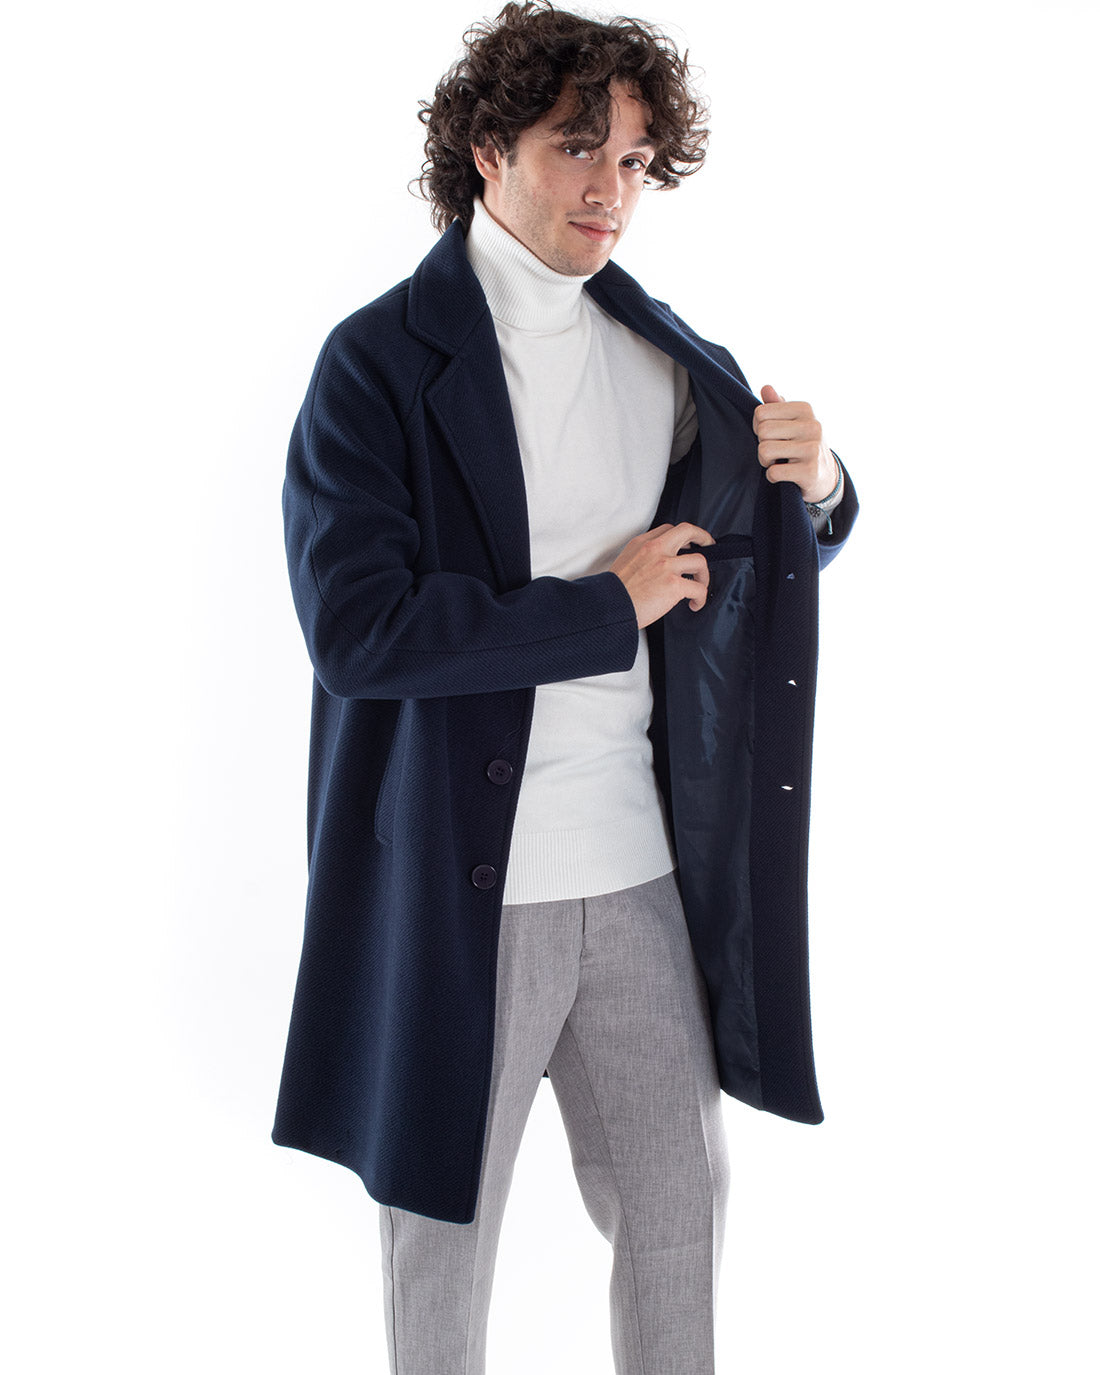 Coat Single-breasted Men's Jacket Oversize Blue Jacket Baronet Jacket GIOSAL-G2963A